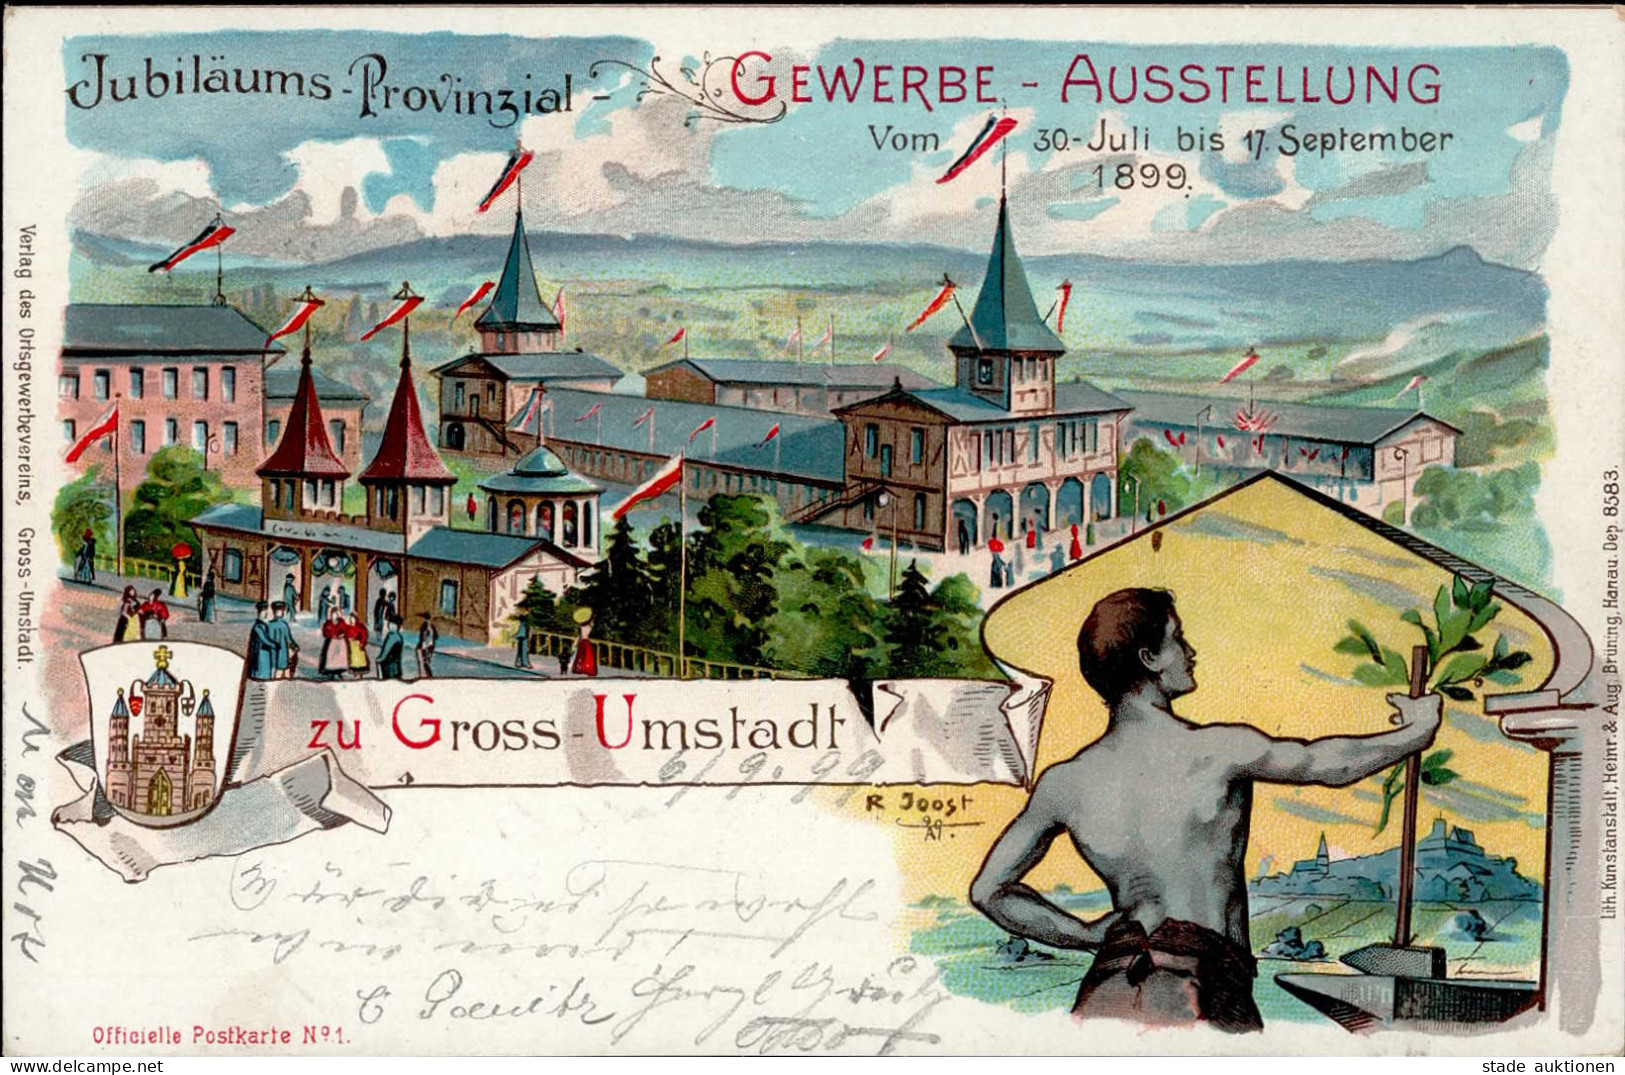 GROSS-UMSTADT - Jubiläums-Provinzial-GEWERBE-AUSSTELLUNG 1899 Künstlerlitho Sign. R.Joost I - Exhibitions